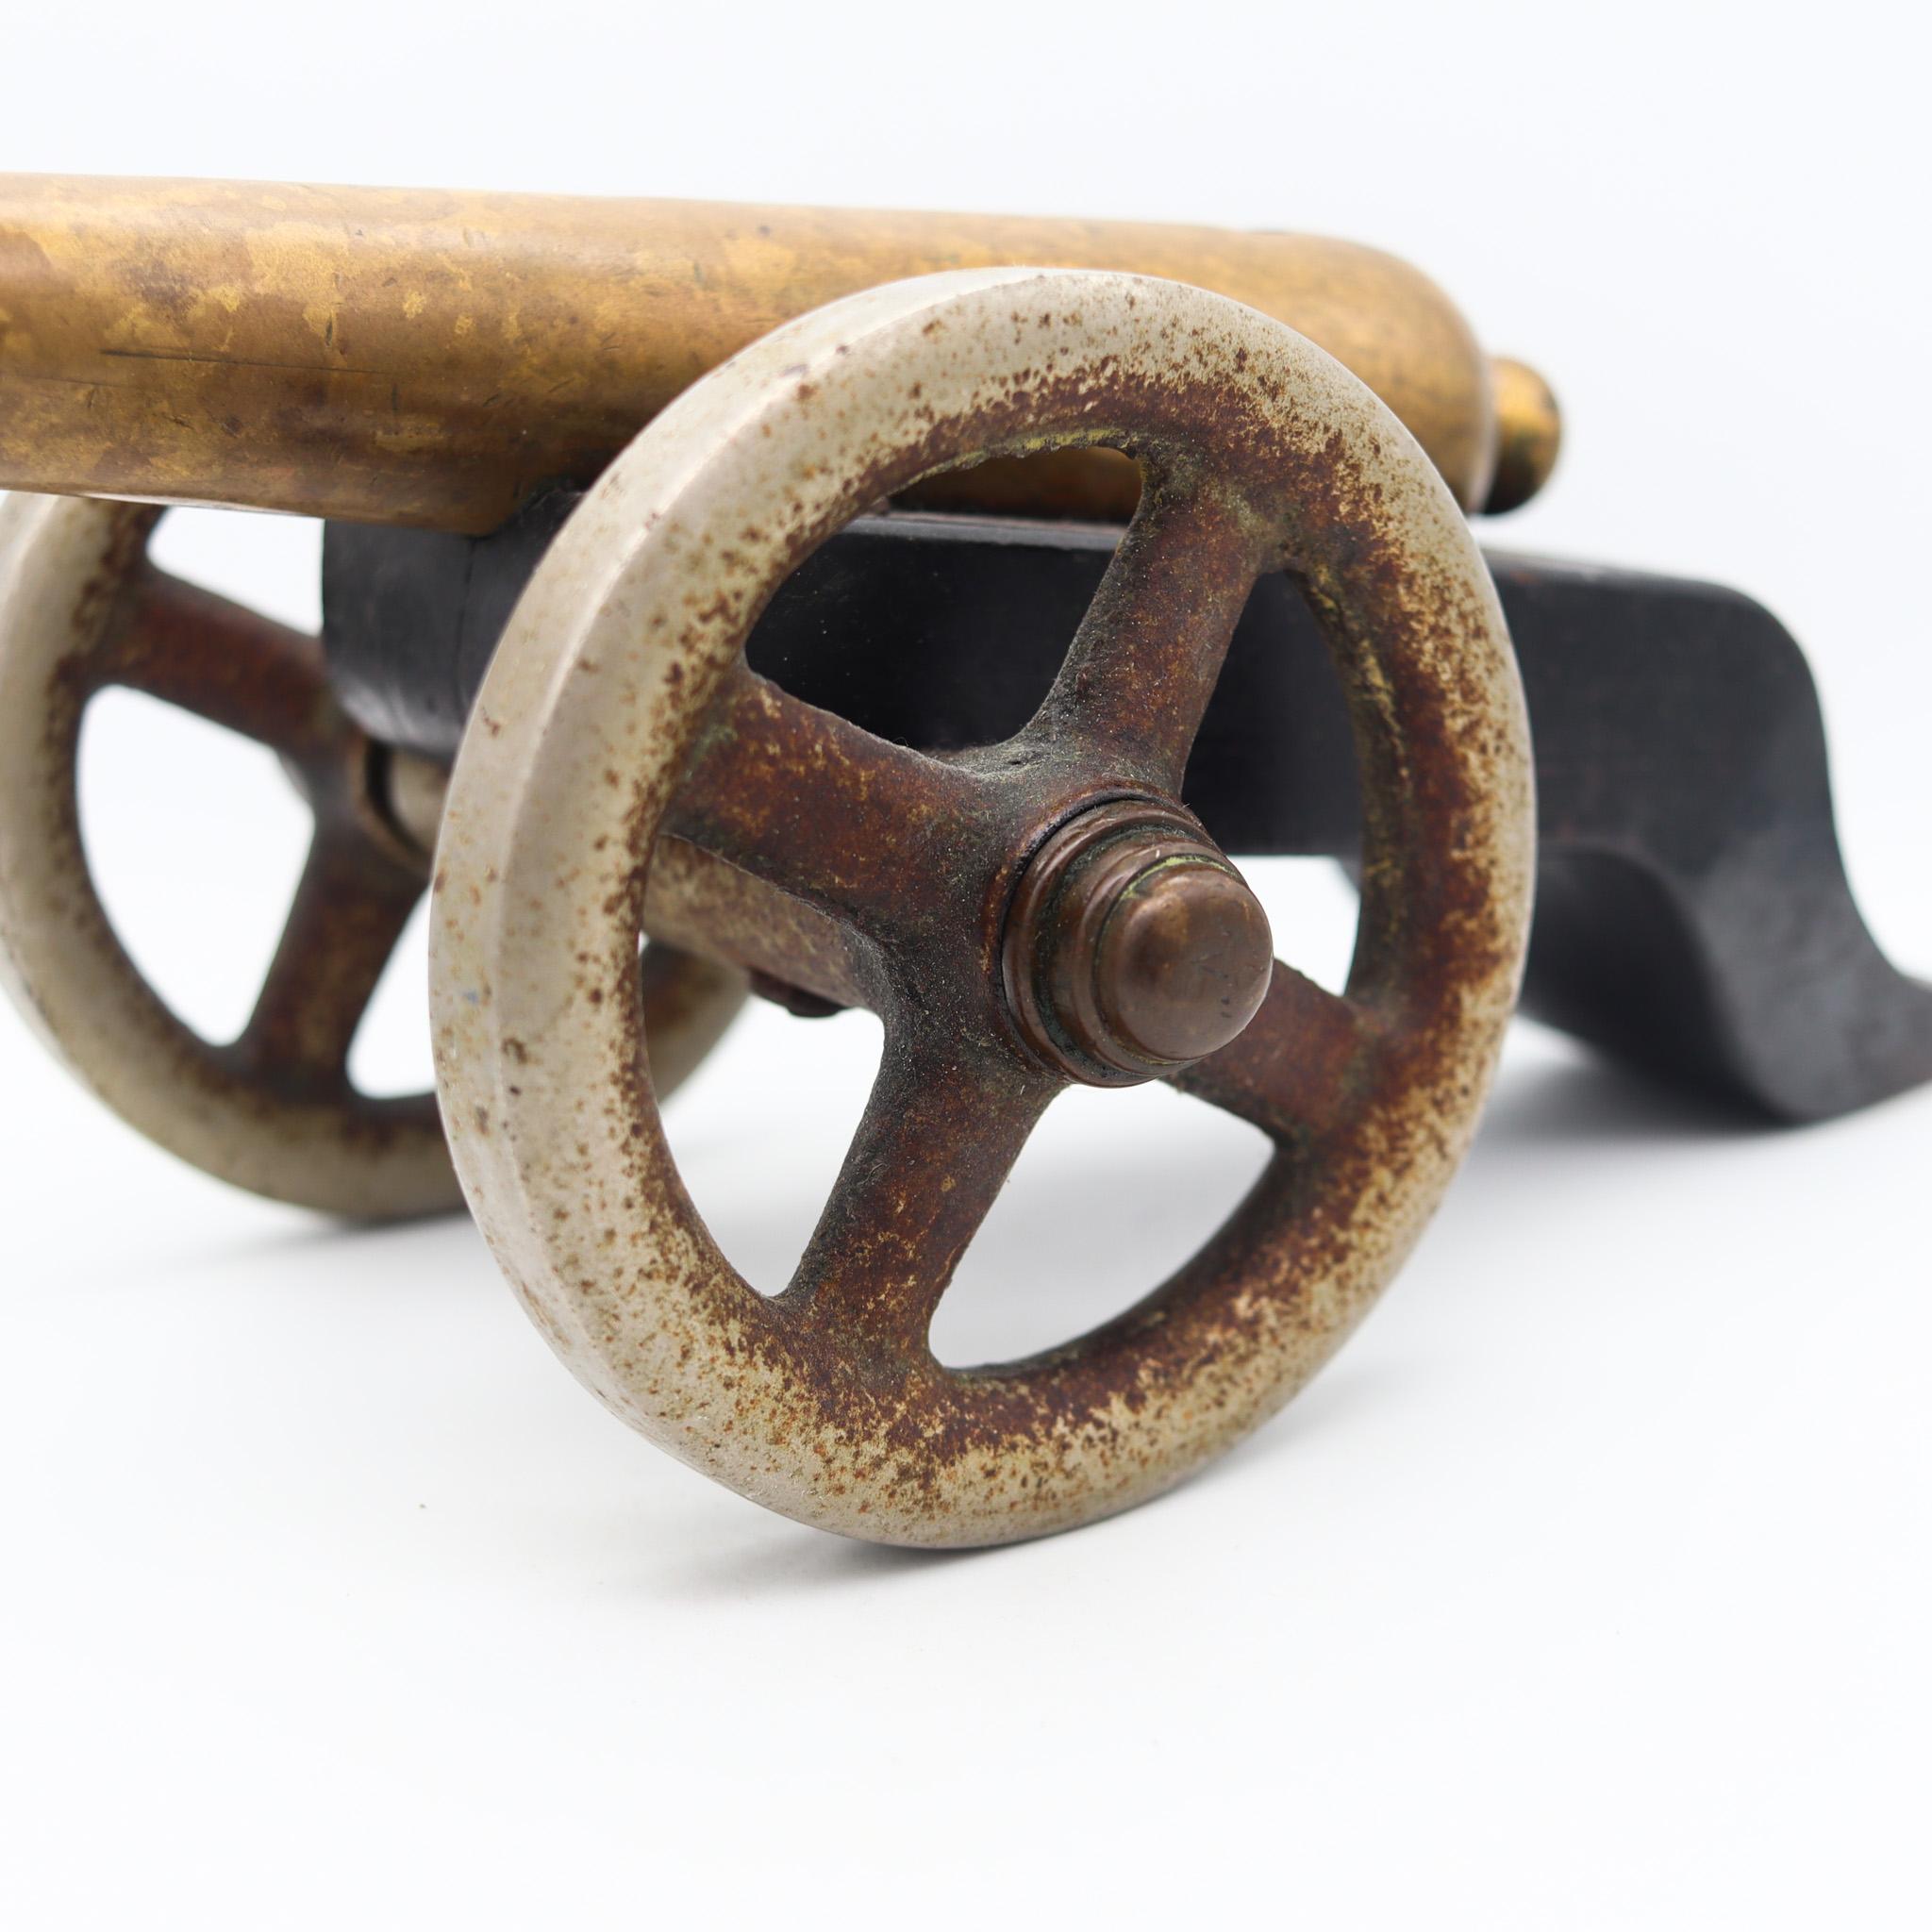 Europäische Signalkanone aus dem späten 18. und 19. Jahrhundert.

Ein antikes Stück, hergestellt und benutzt in Europa, um 1800. Diese Art von Spielzeug in kleinem Maßstab wurde für die Marine einiger europäischer Länder hergestellt, um